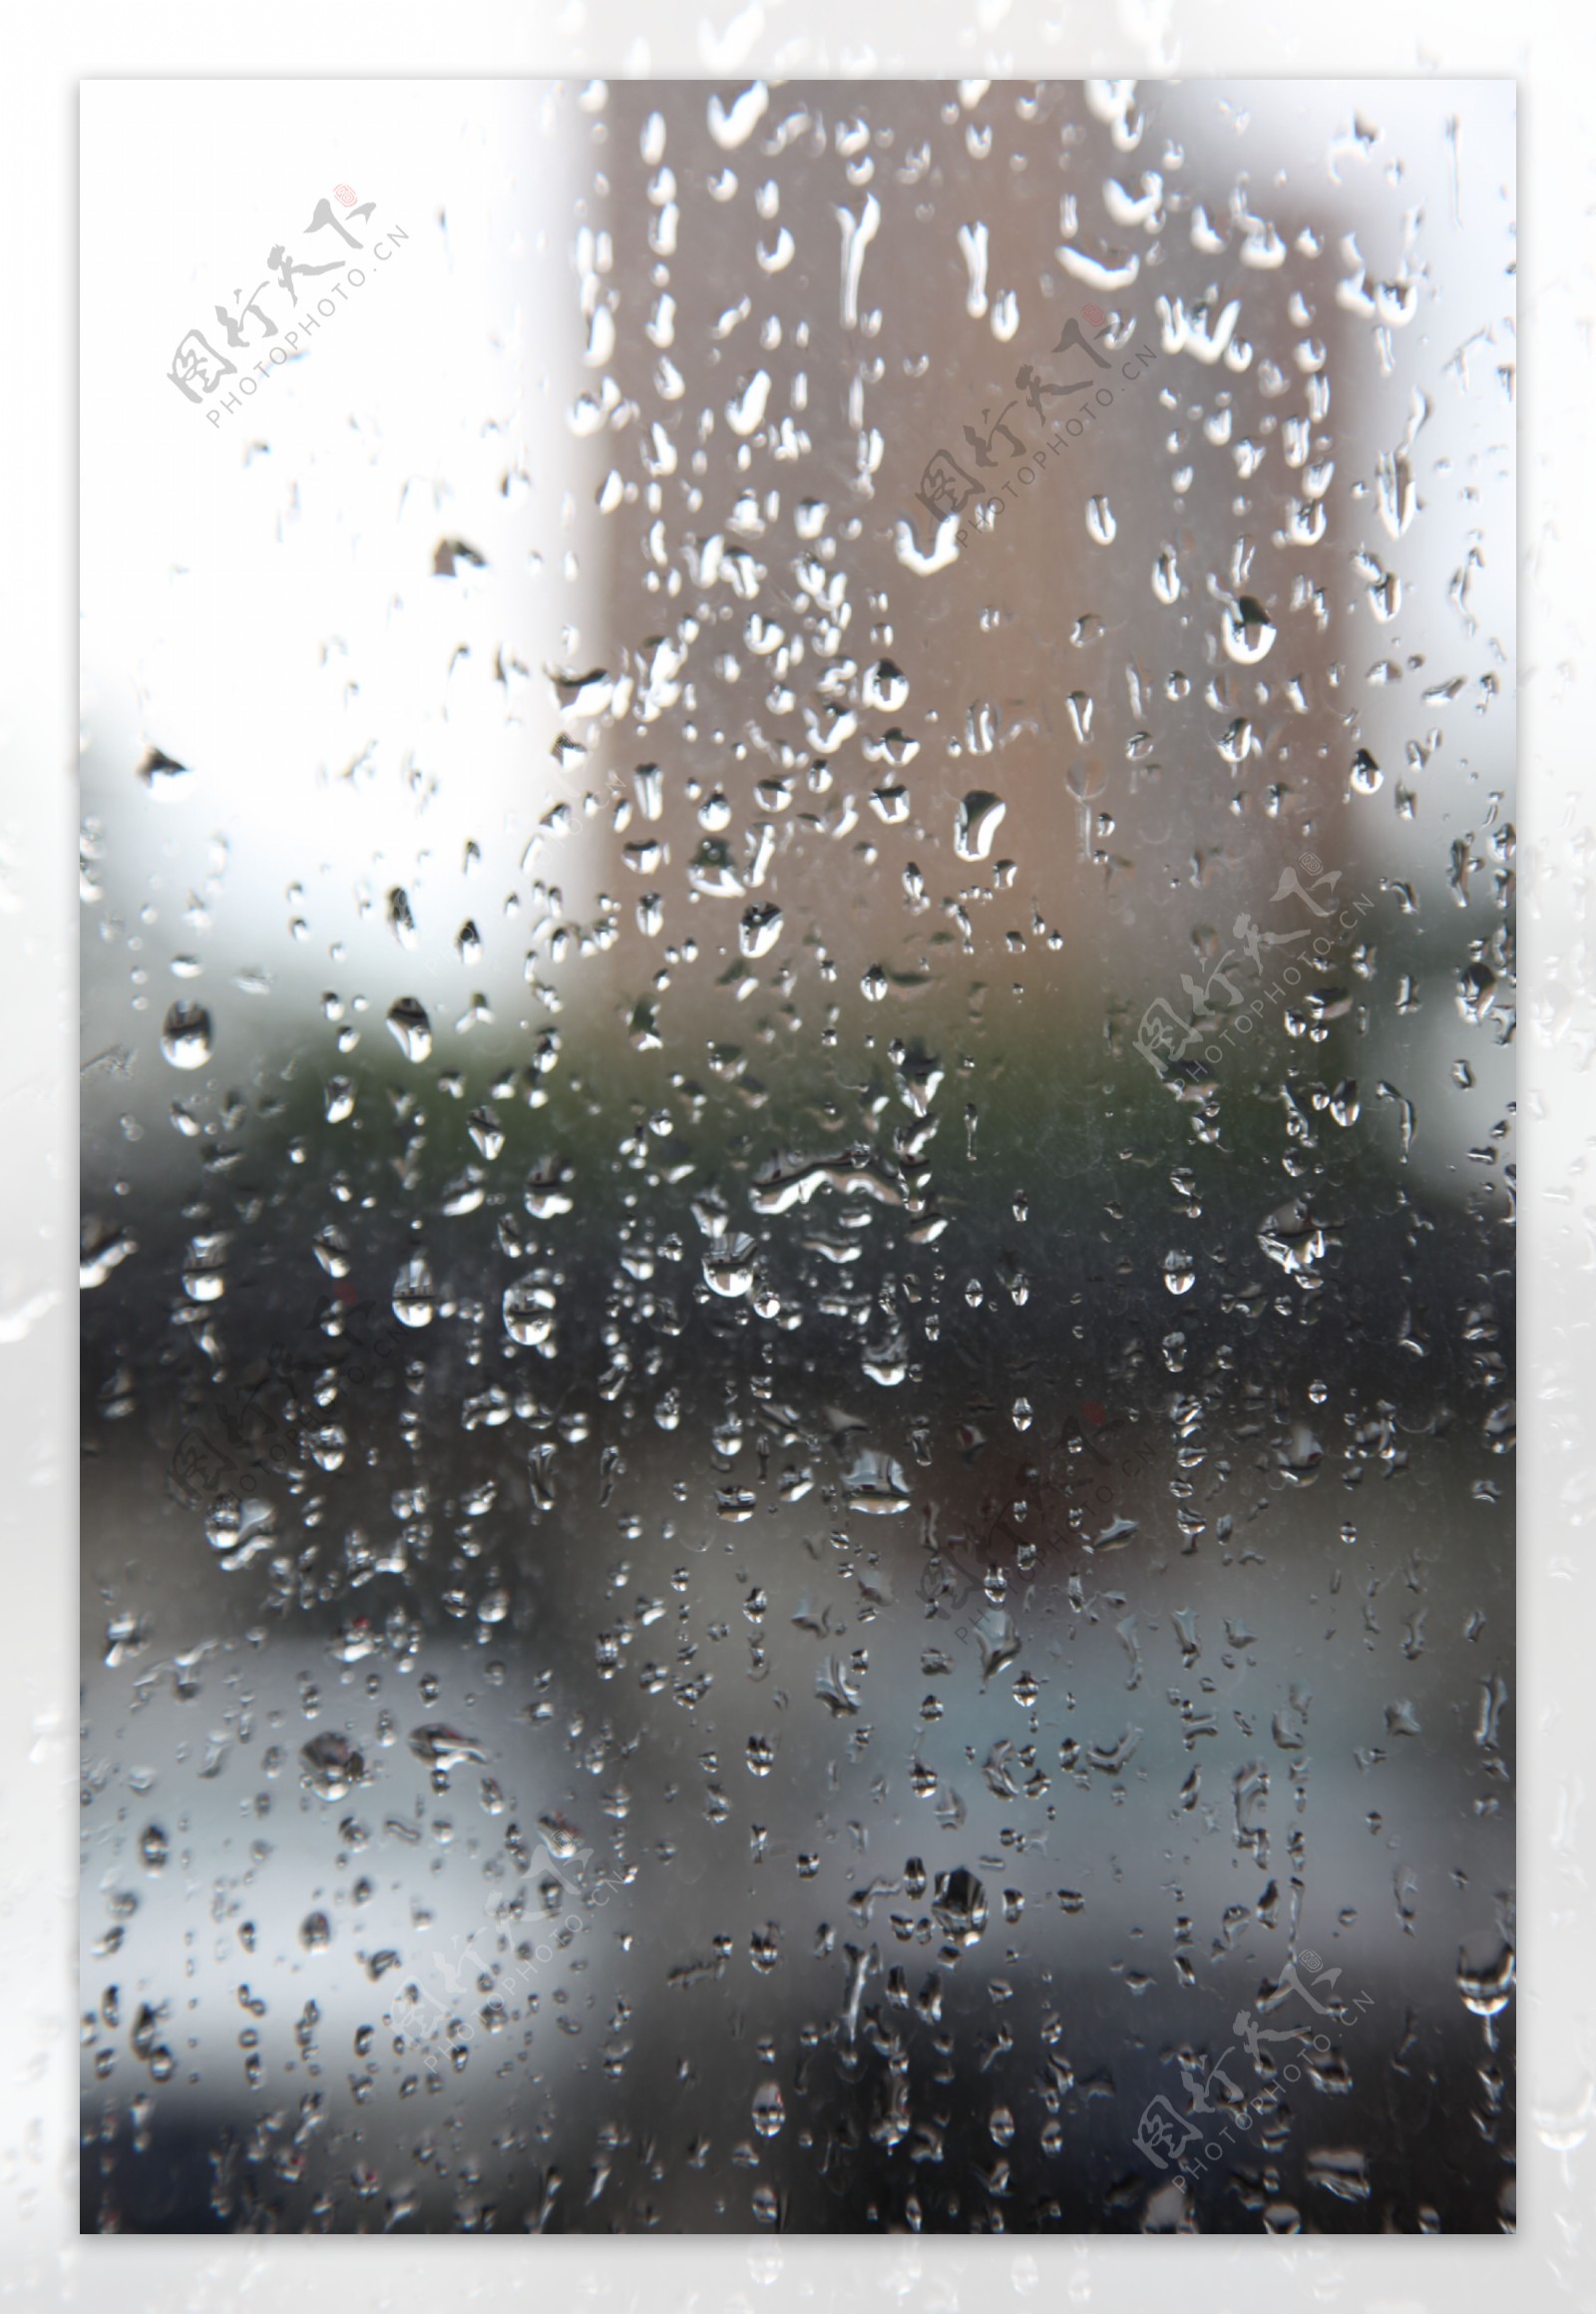 雨水玻璃上的水珠手机屏图片